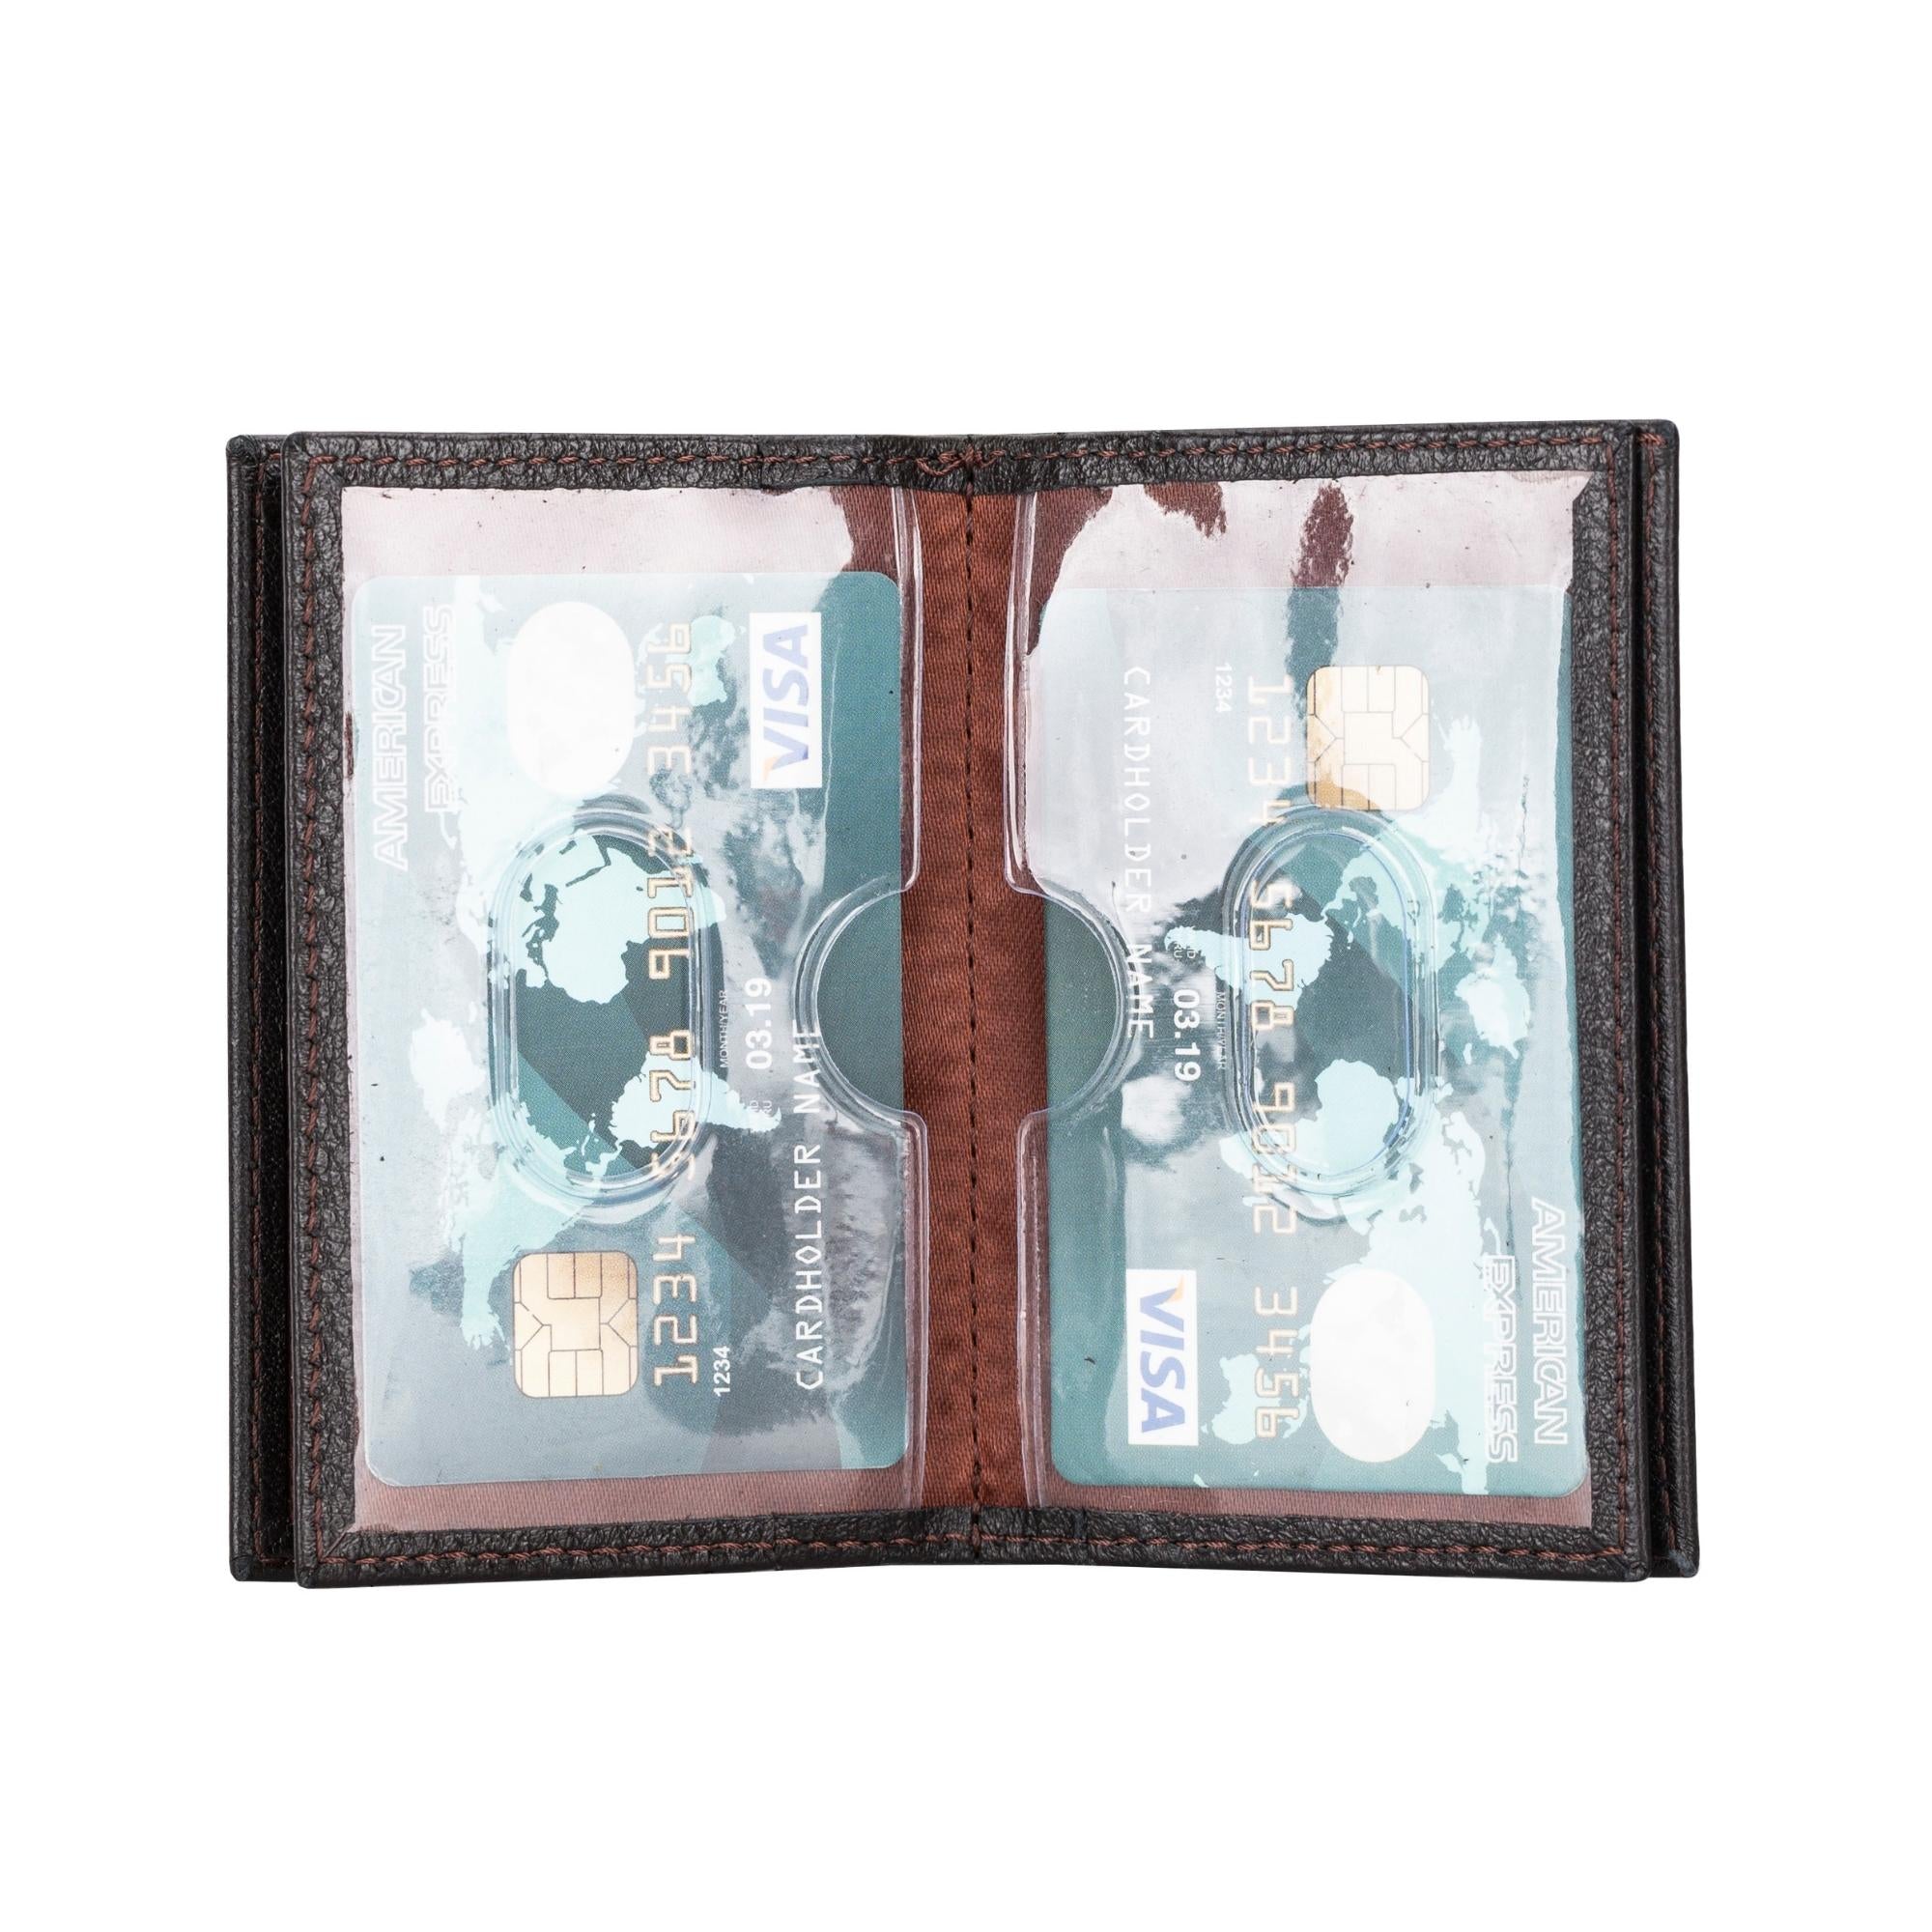 Denver Luxury Full-Grain Leather Card Holder for Men-Dark Brown---TORONATA